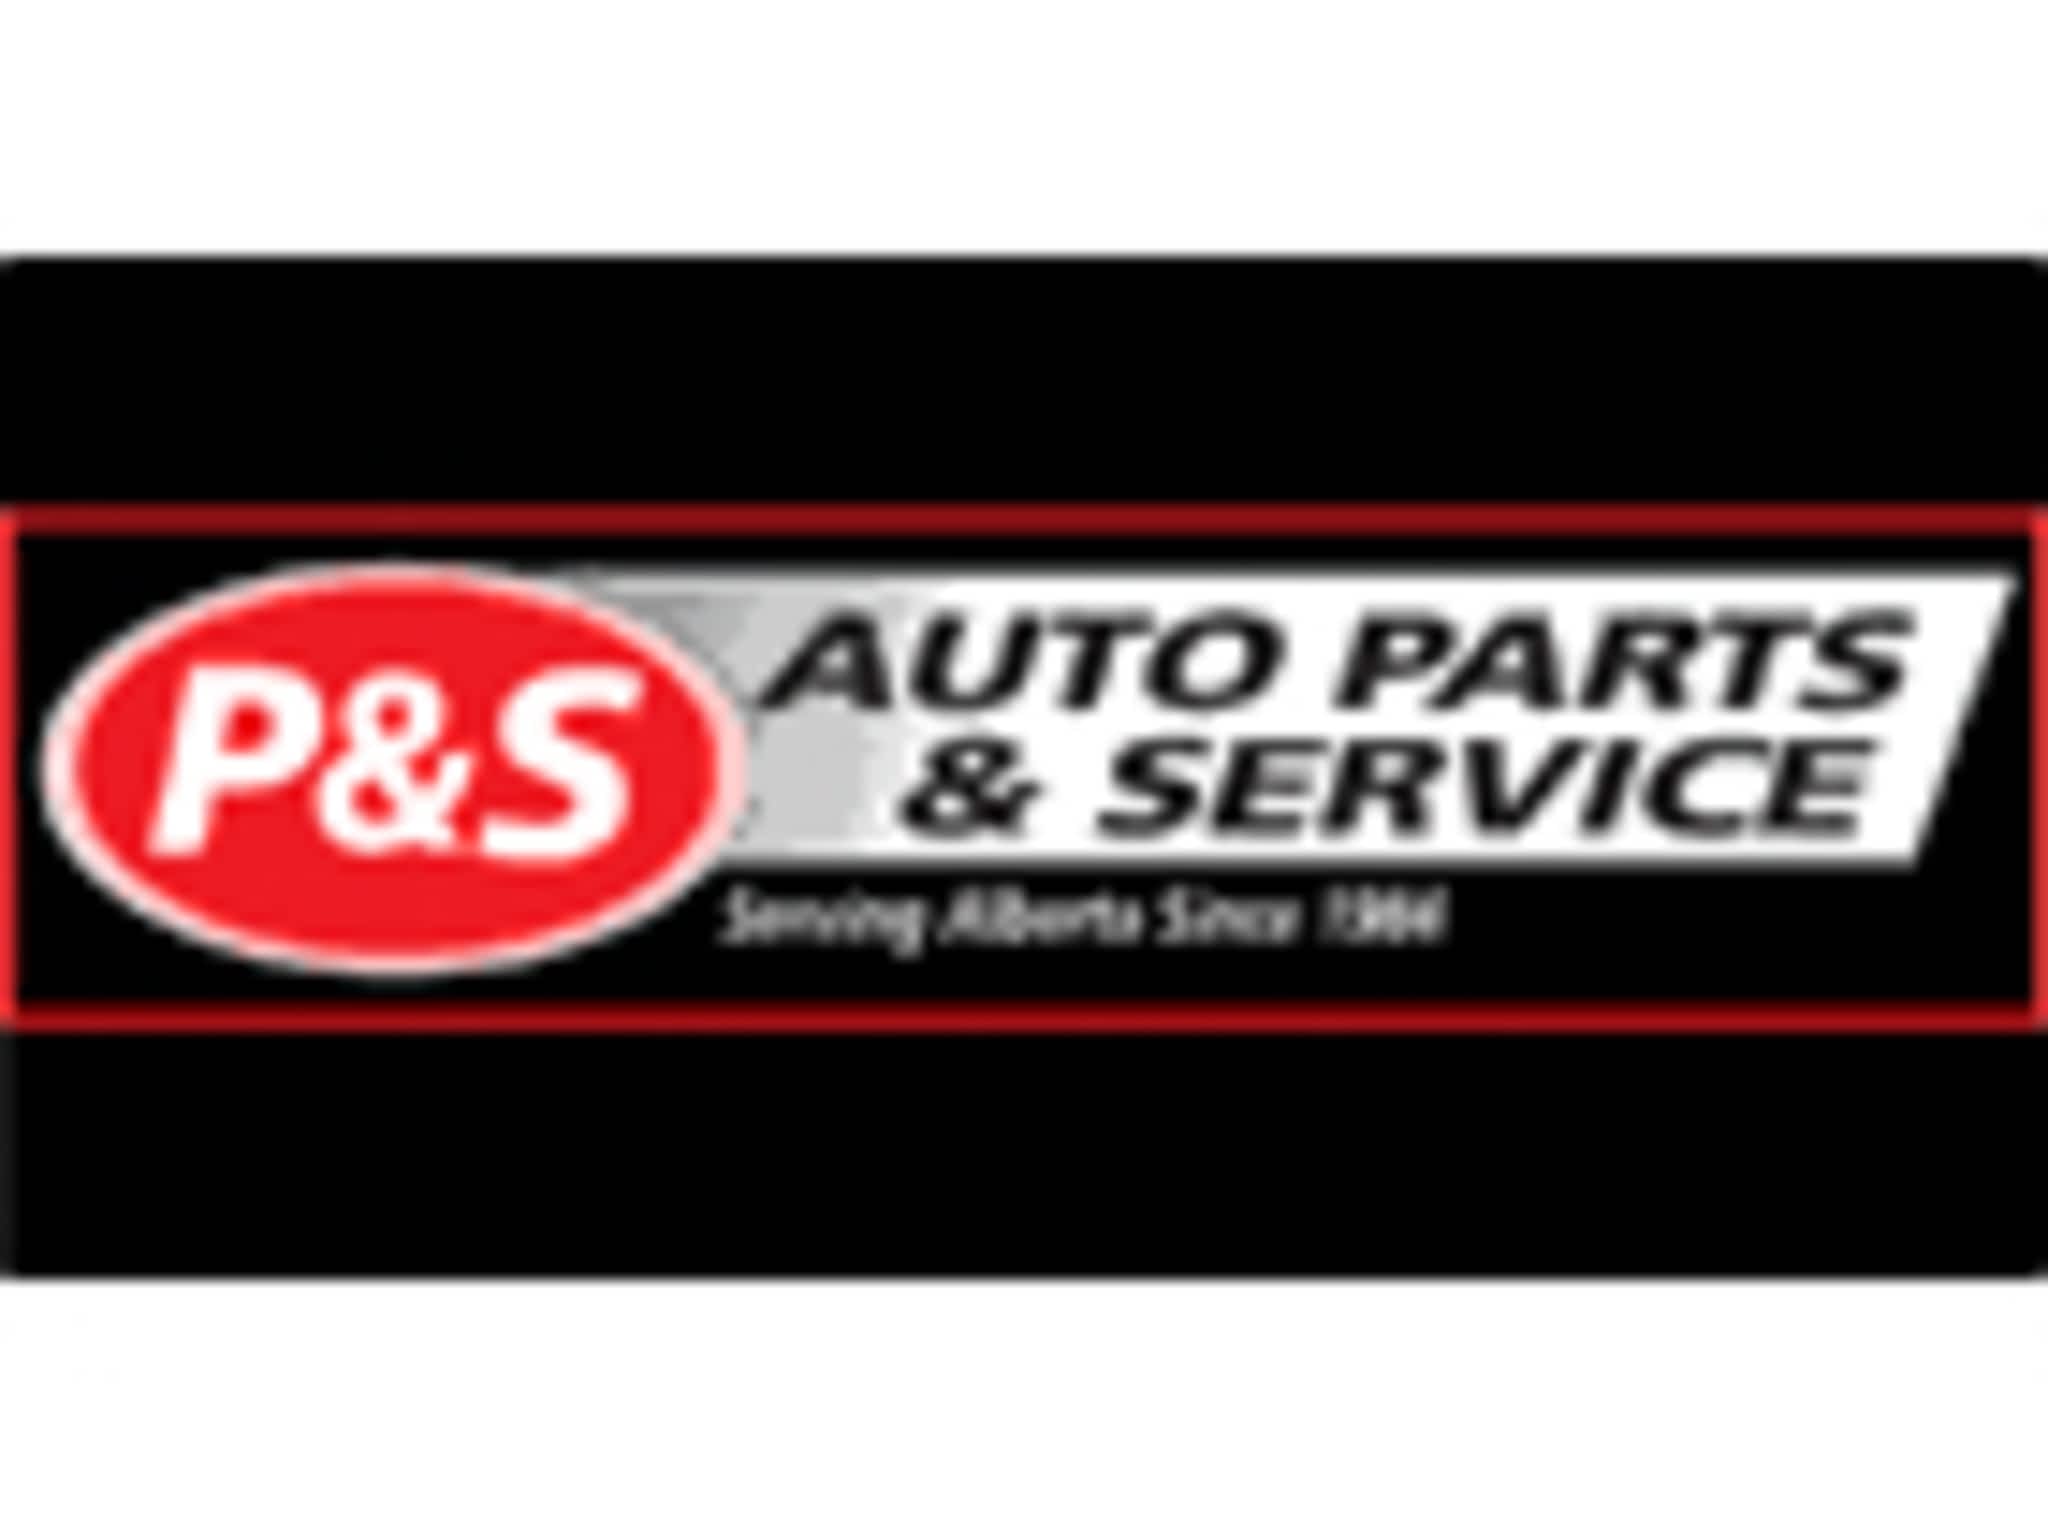 photo P & S Auto Parts & Service